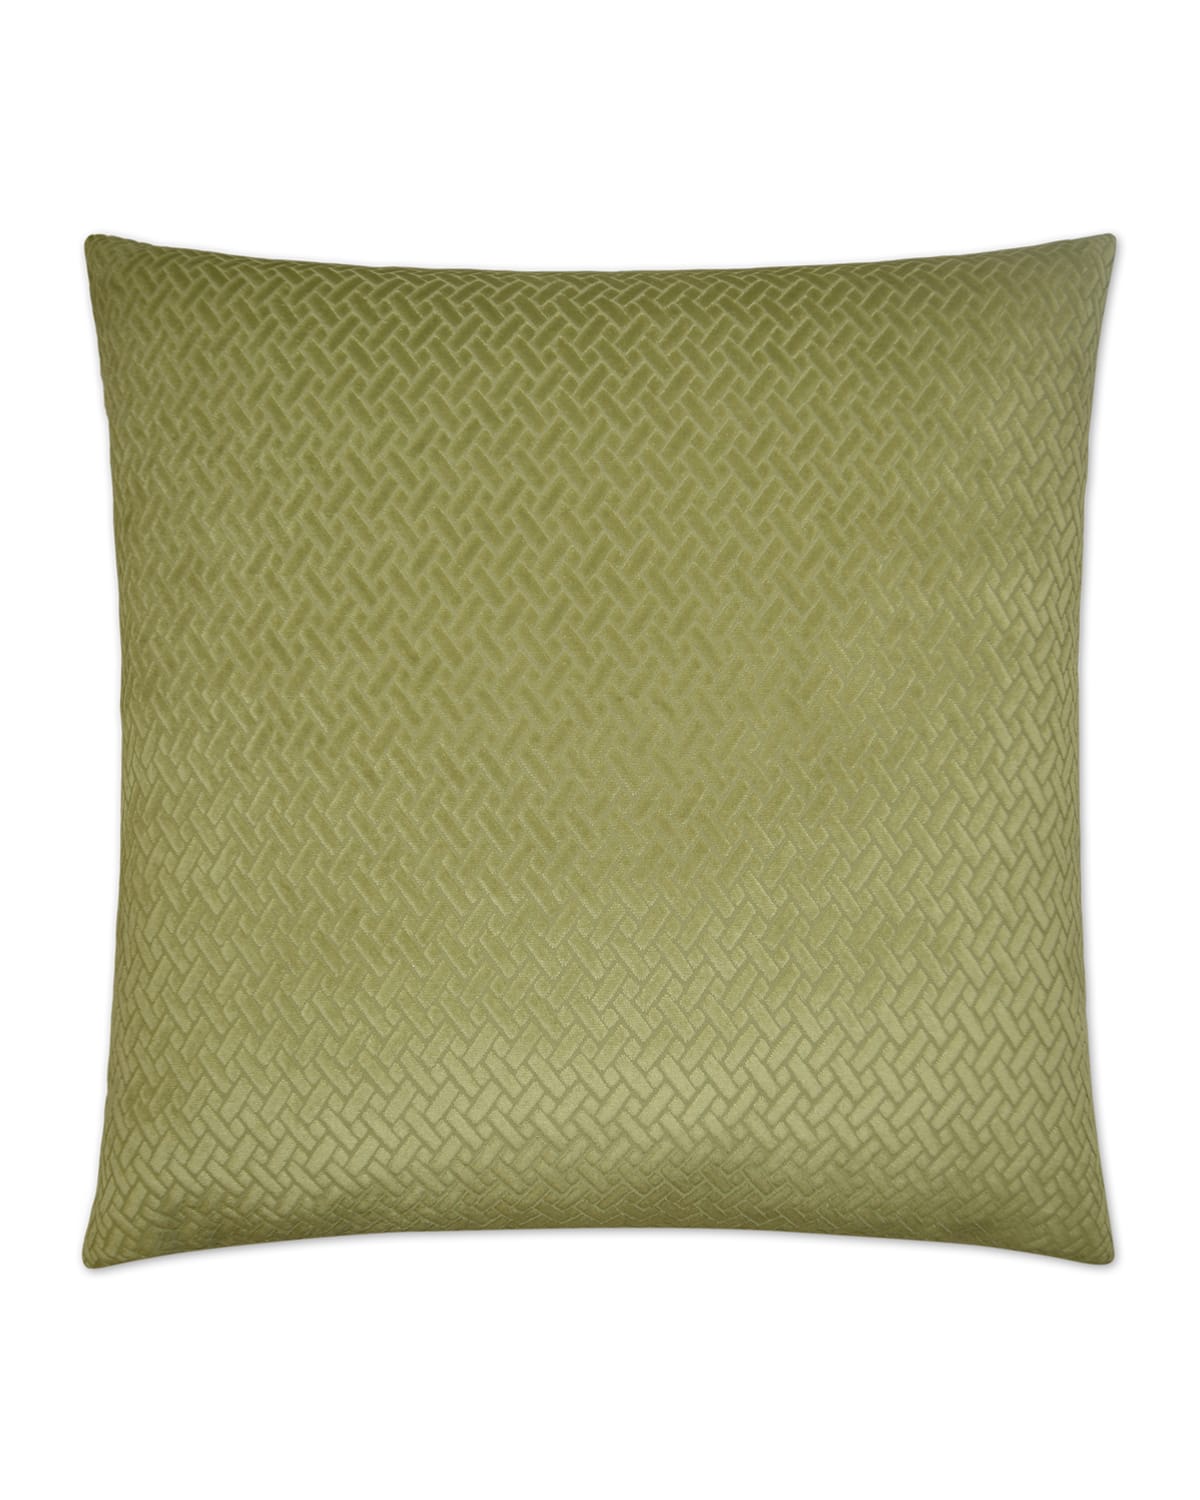 D.v. Kap Home Azure Maze Pillow In Green